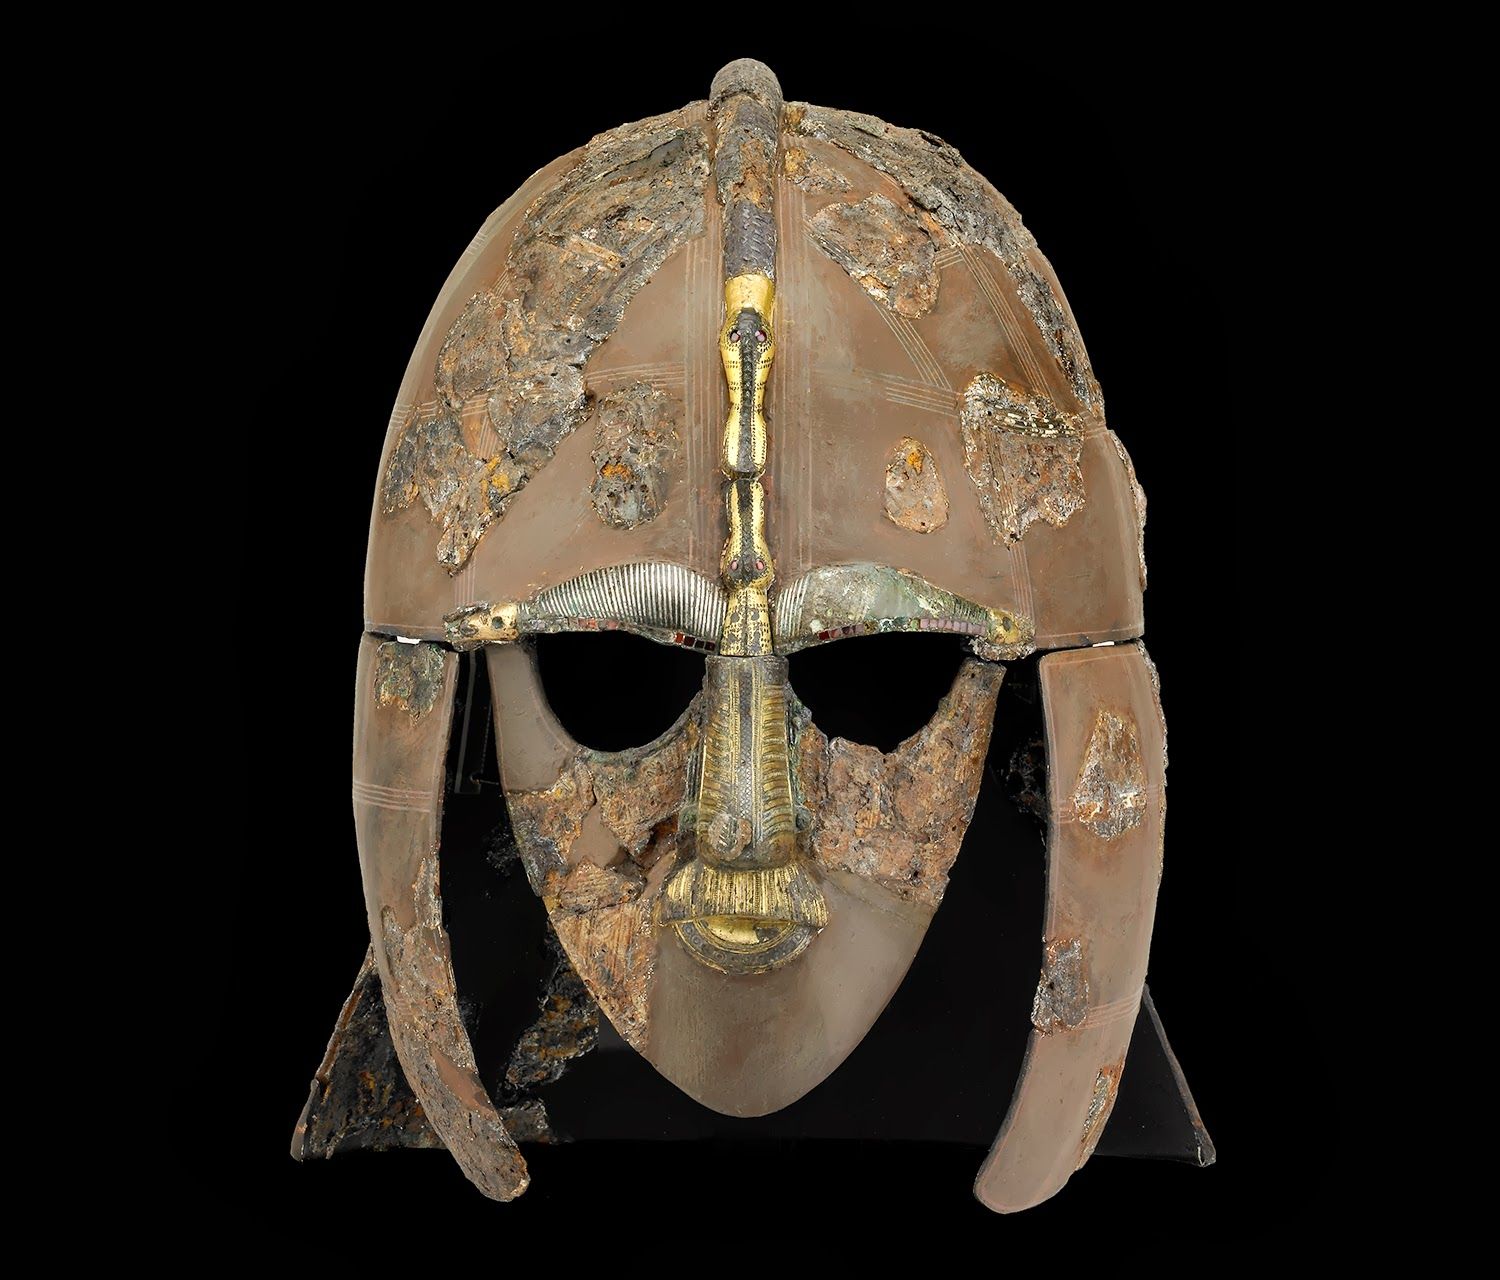 Der Sutton Hoo-Helm by Unbekannter Künstler - frühes 6. Jhd. - 31,5 x 25,5 x 21,5 cm British Museum